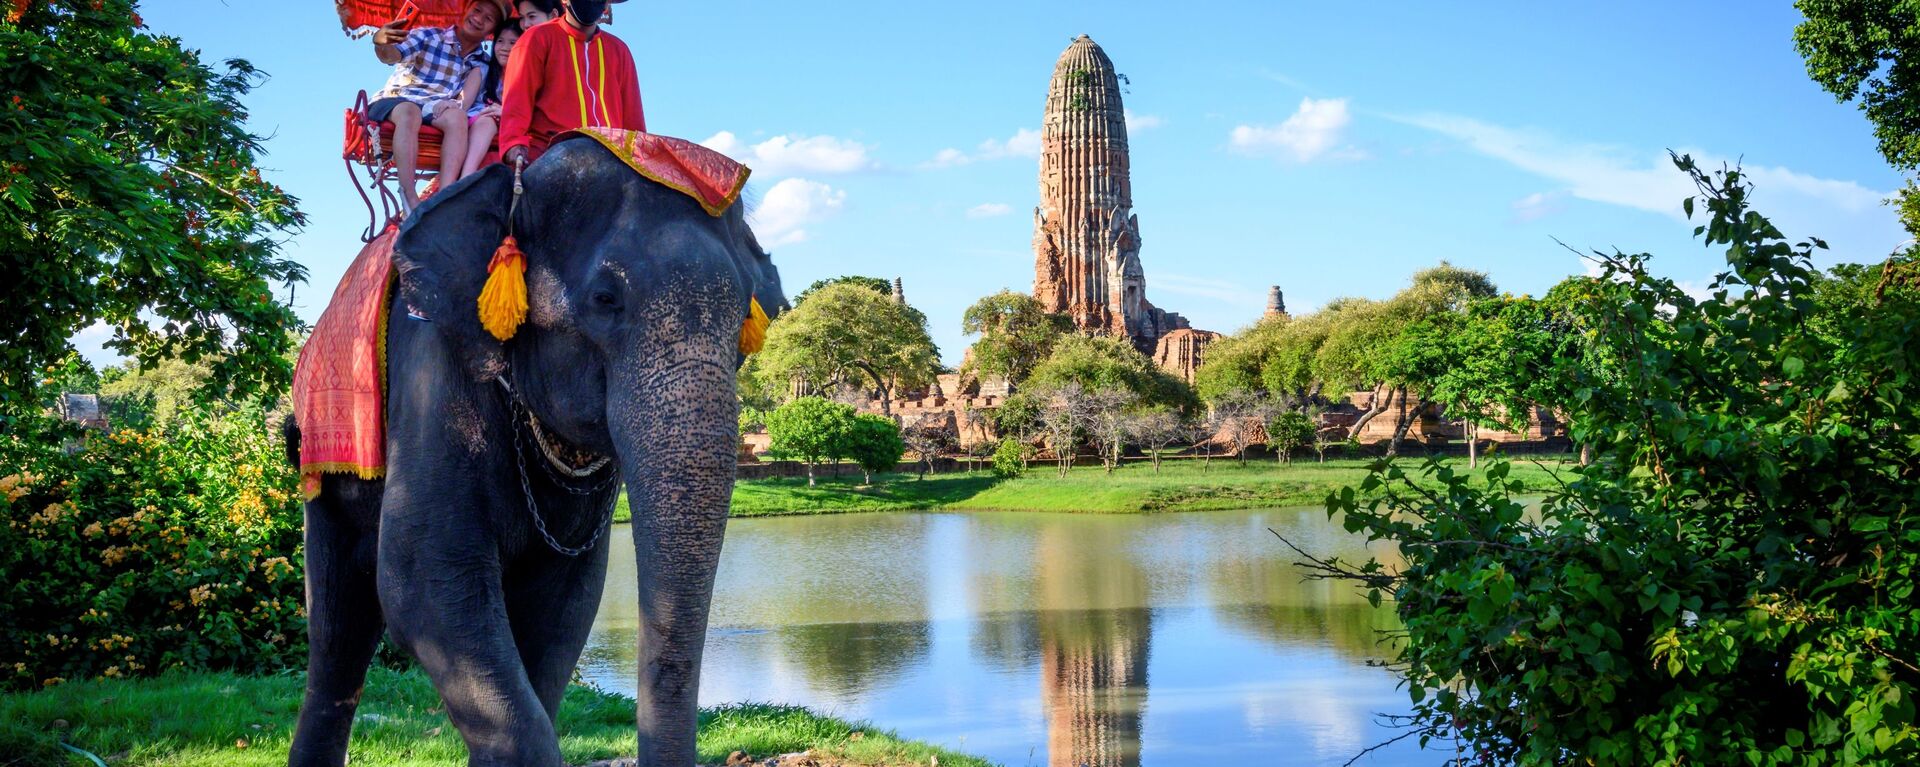 Туристы едут на слоне перед старым буддийским храмом в Аюттхае, примерно в 70 км к северу от Бангкока, Таиланд - Sputnik Беларусь, 1920, 08.03.2021